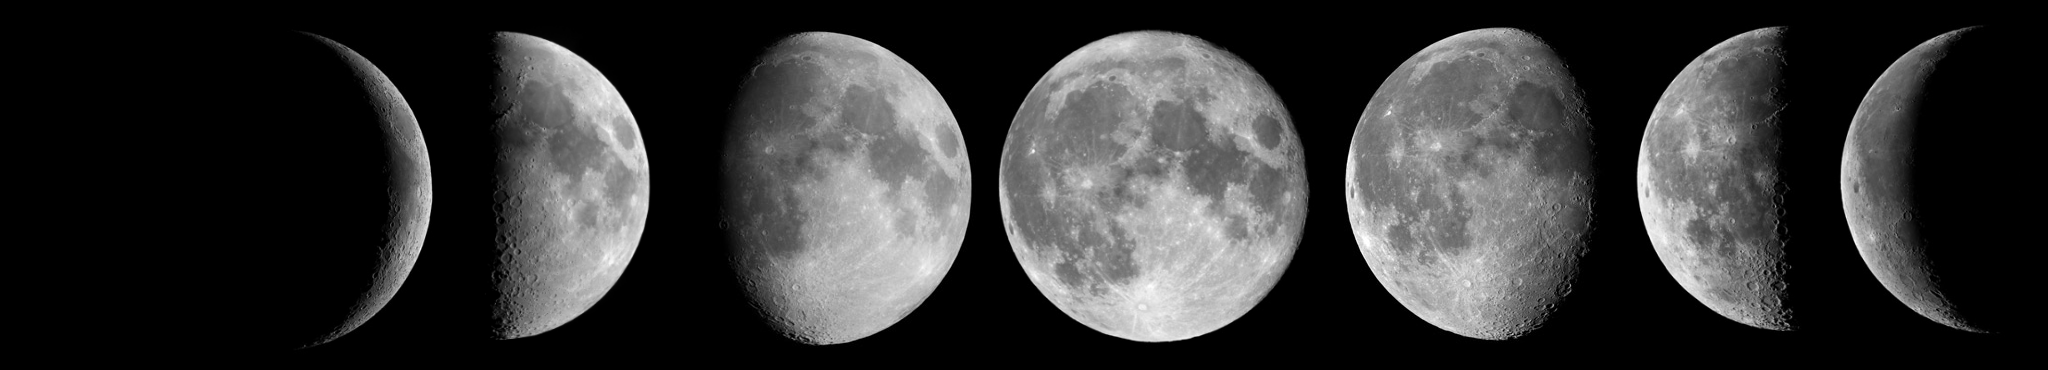 Les différentes phases de la lune, vue de l'hémisphère nord. Mais n'anticipons pas trop… 